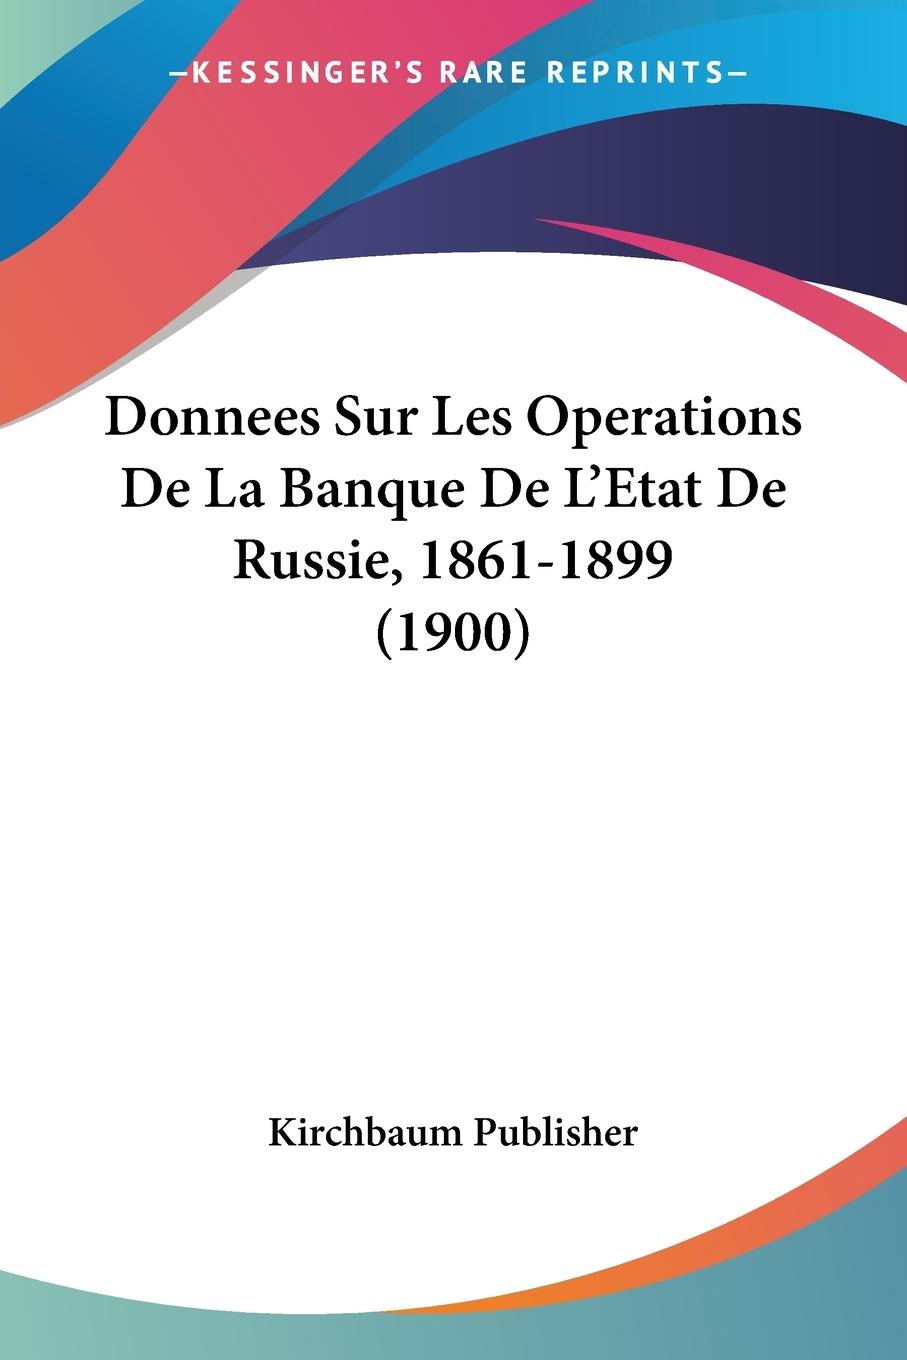 Donnees Sur Les Operations De La Banque De L Etat De Russie, 1861-1899 (1900) - Kirchbaum Publisher